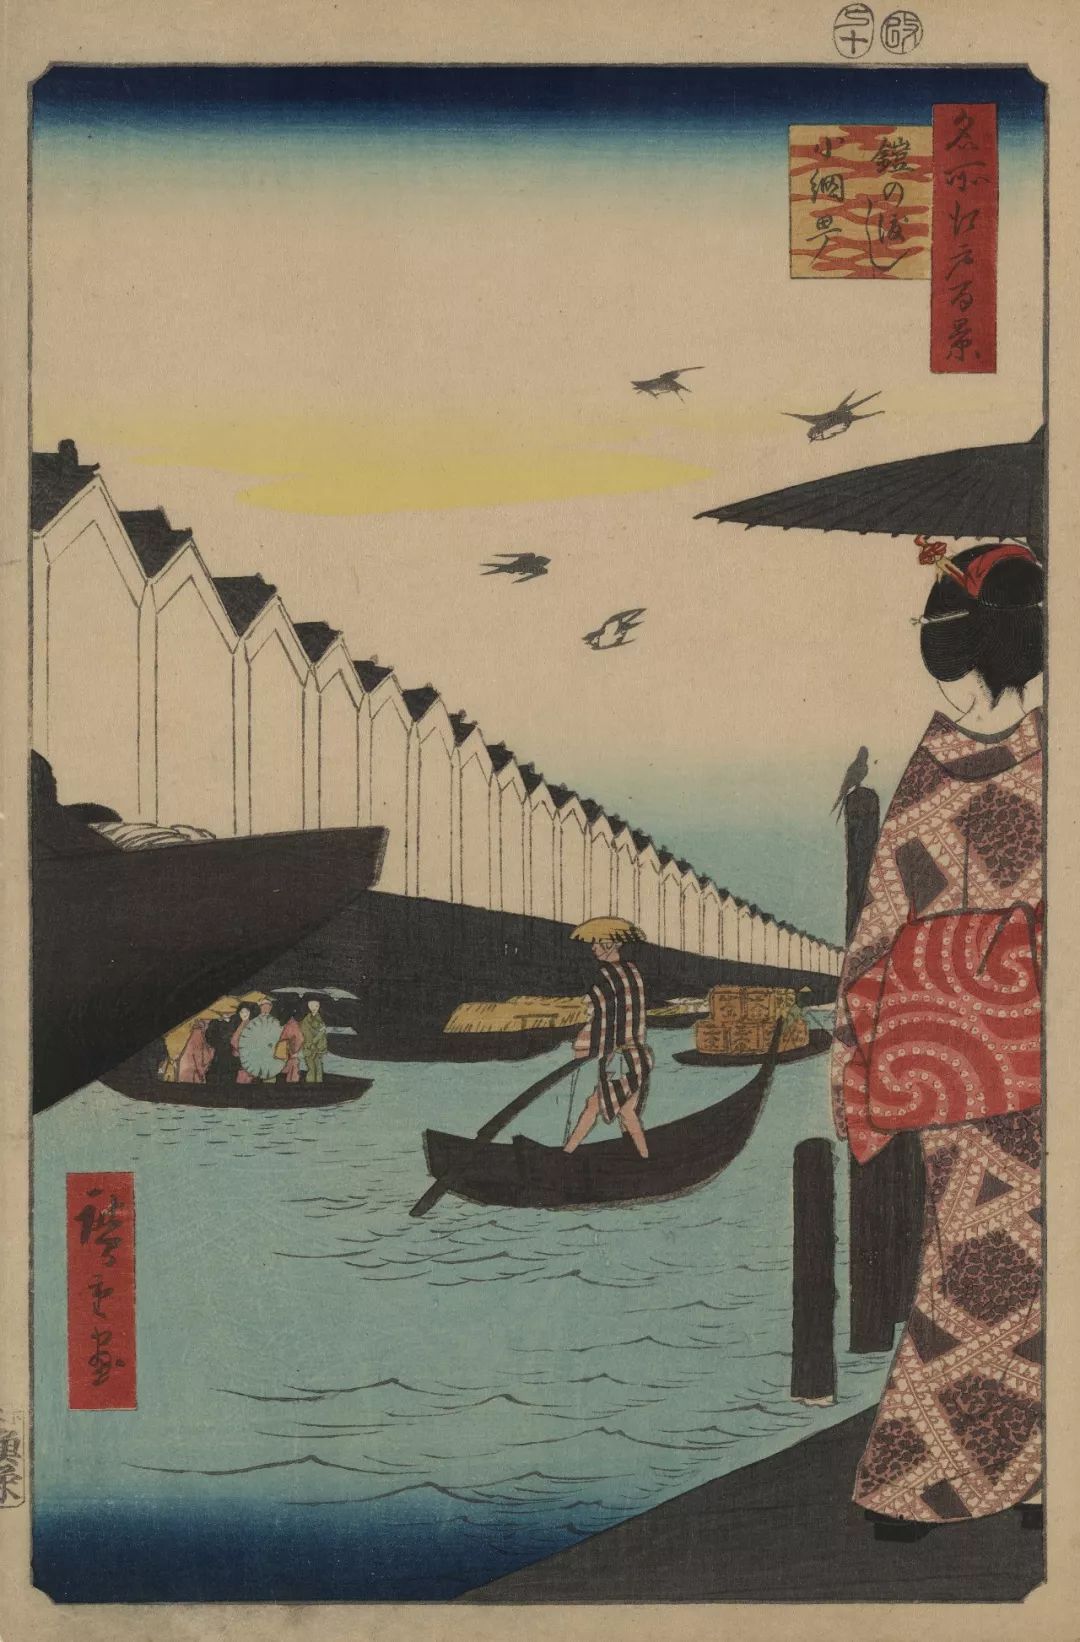 尾形光琳的燕子花图 - 祝寿的江户绘画 - 每日环球展览 - iMuseum